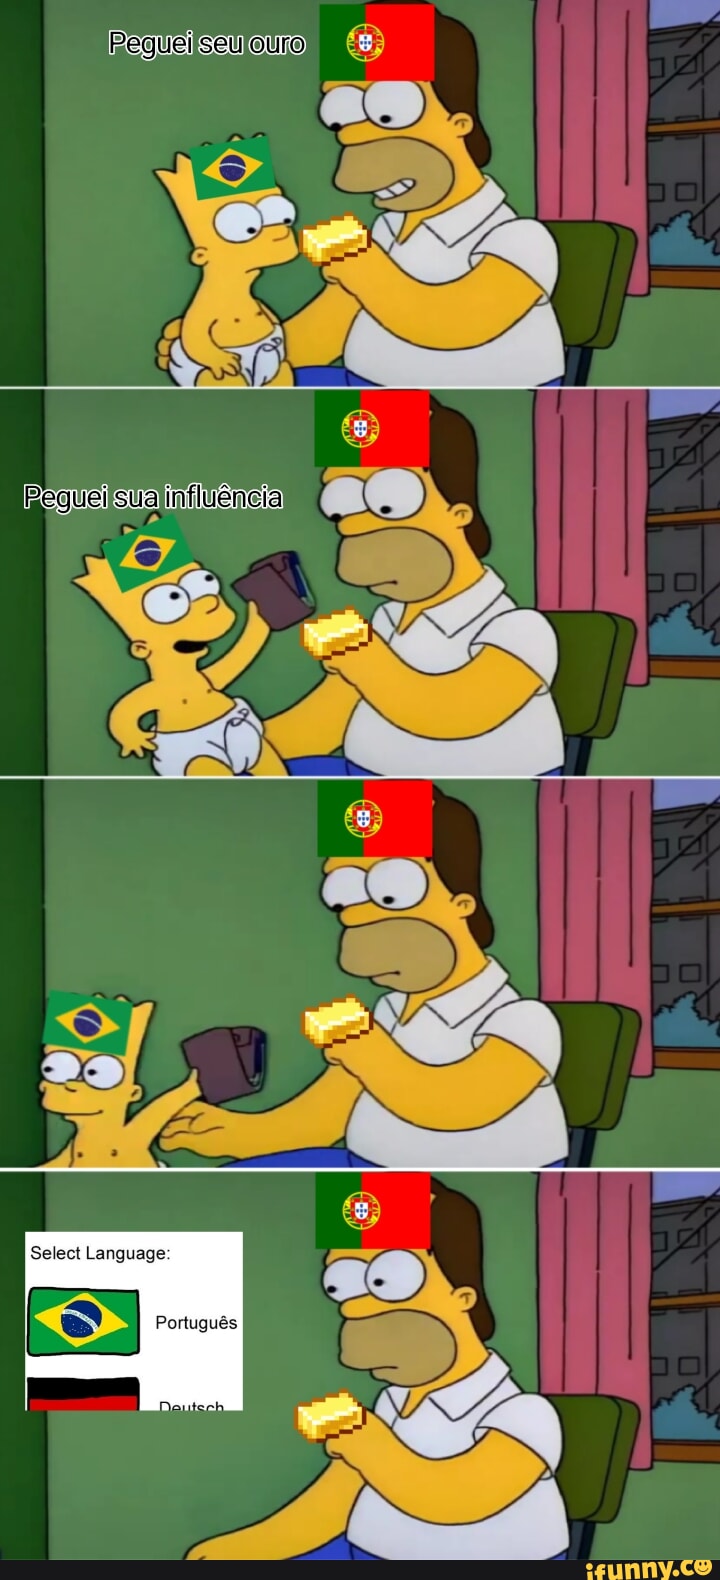 Portugal e sua dublagem magnífica - iFunny Brazil